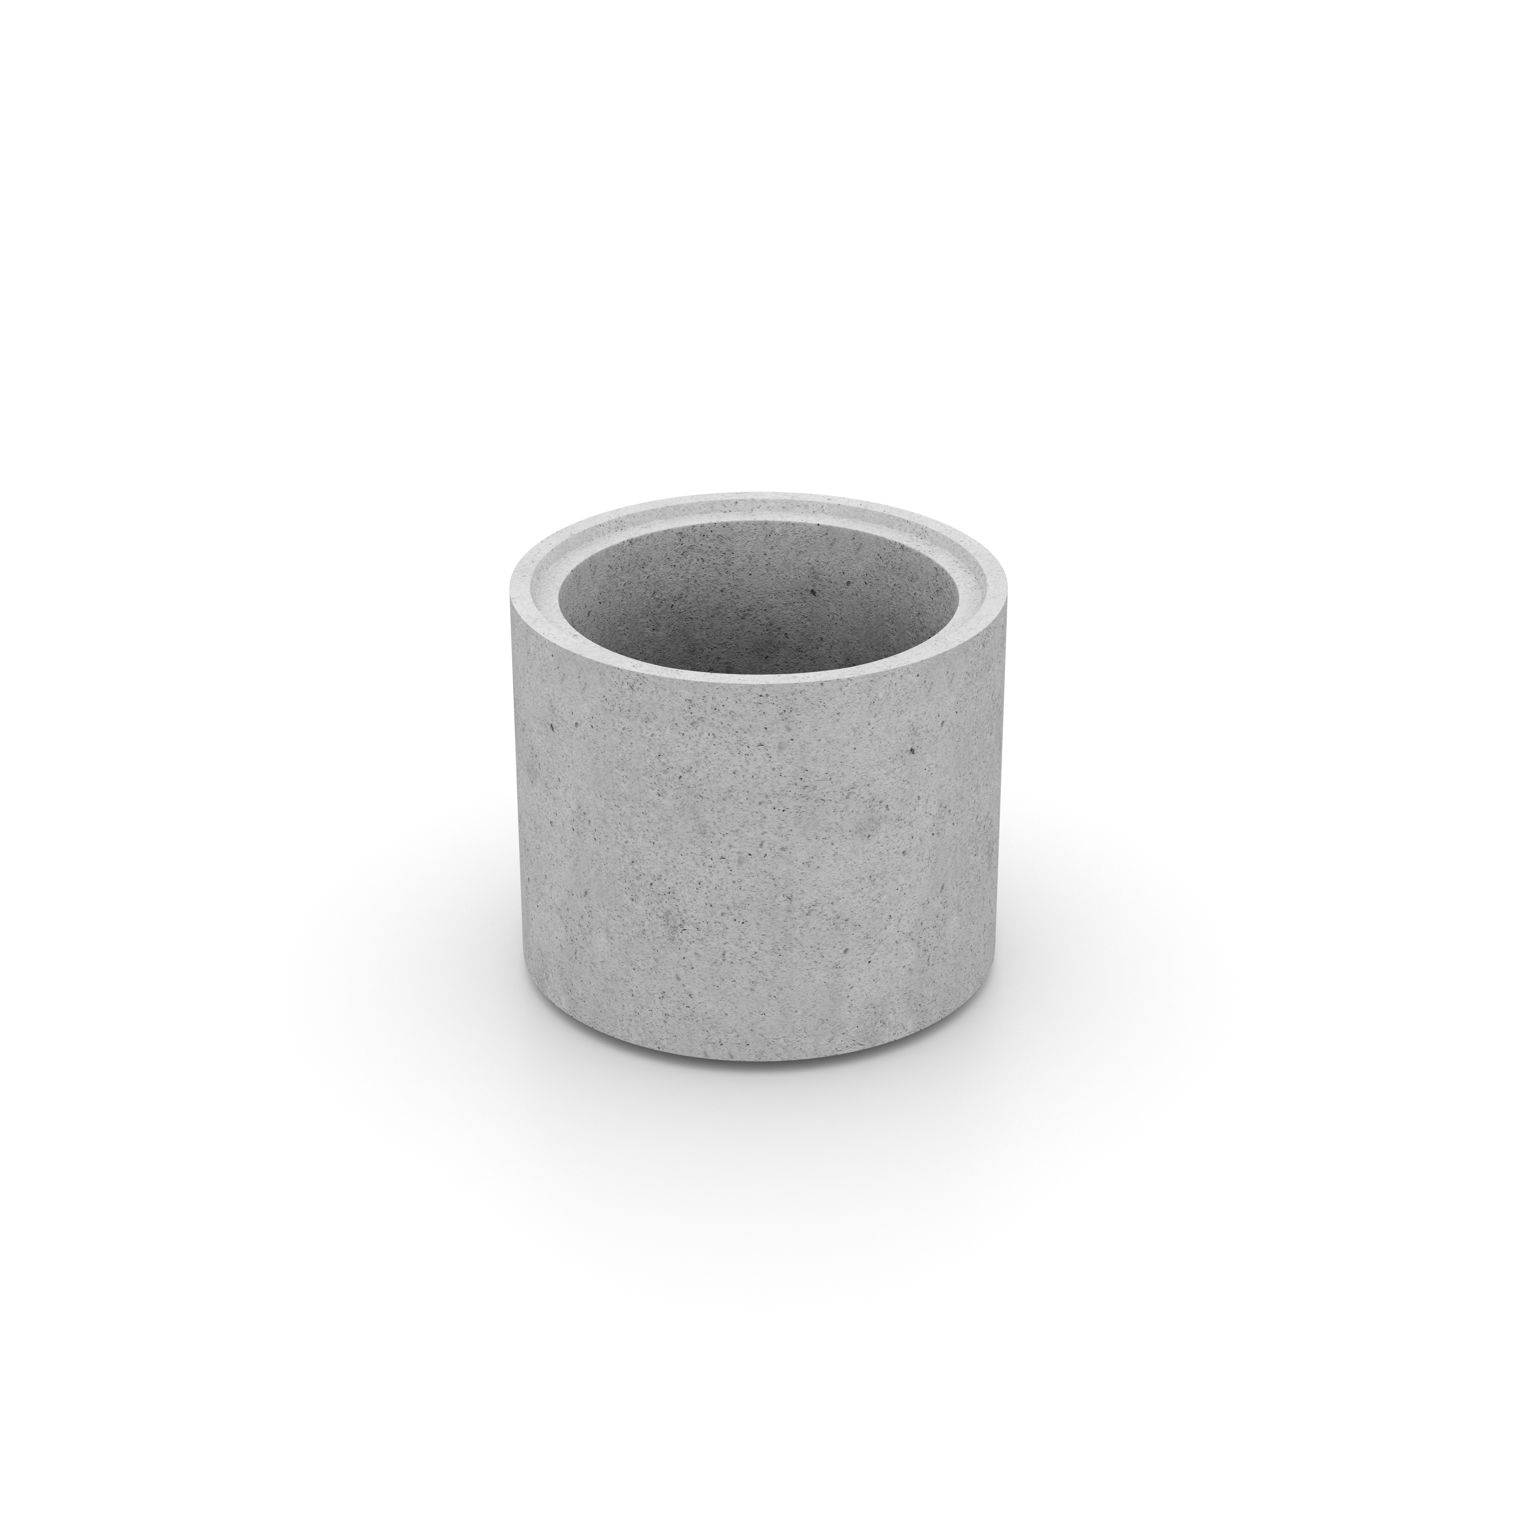 Produktbild av en cementfogad brunnsring i formatet: 600x600 mm